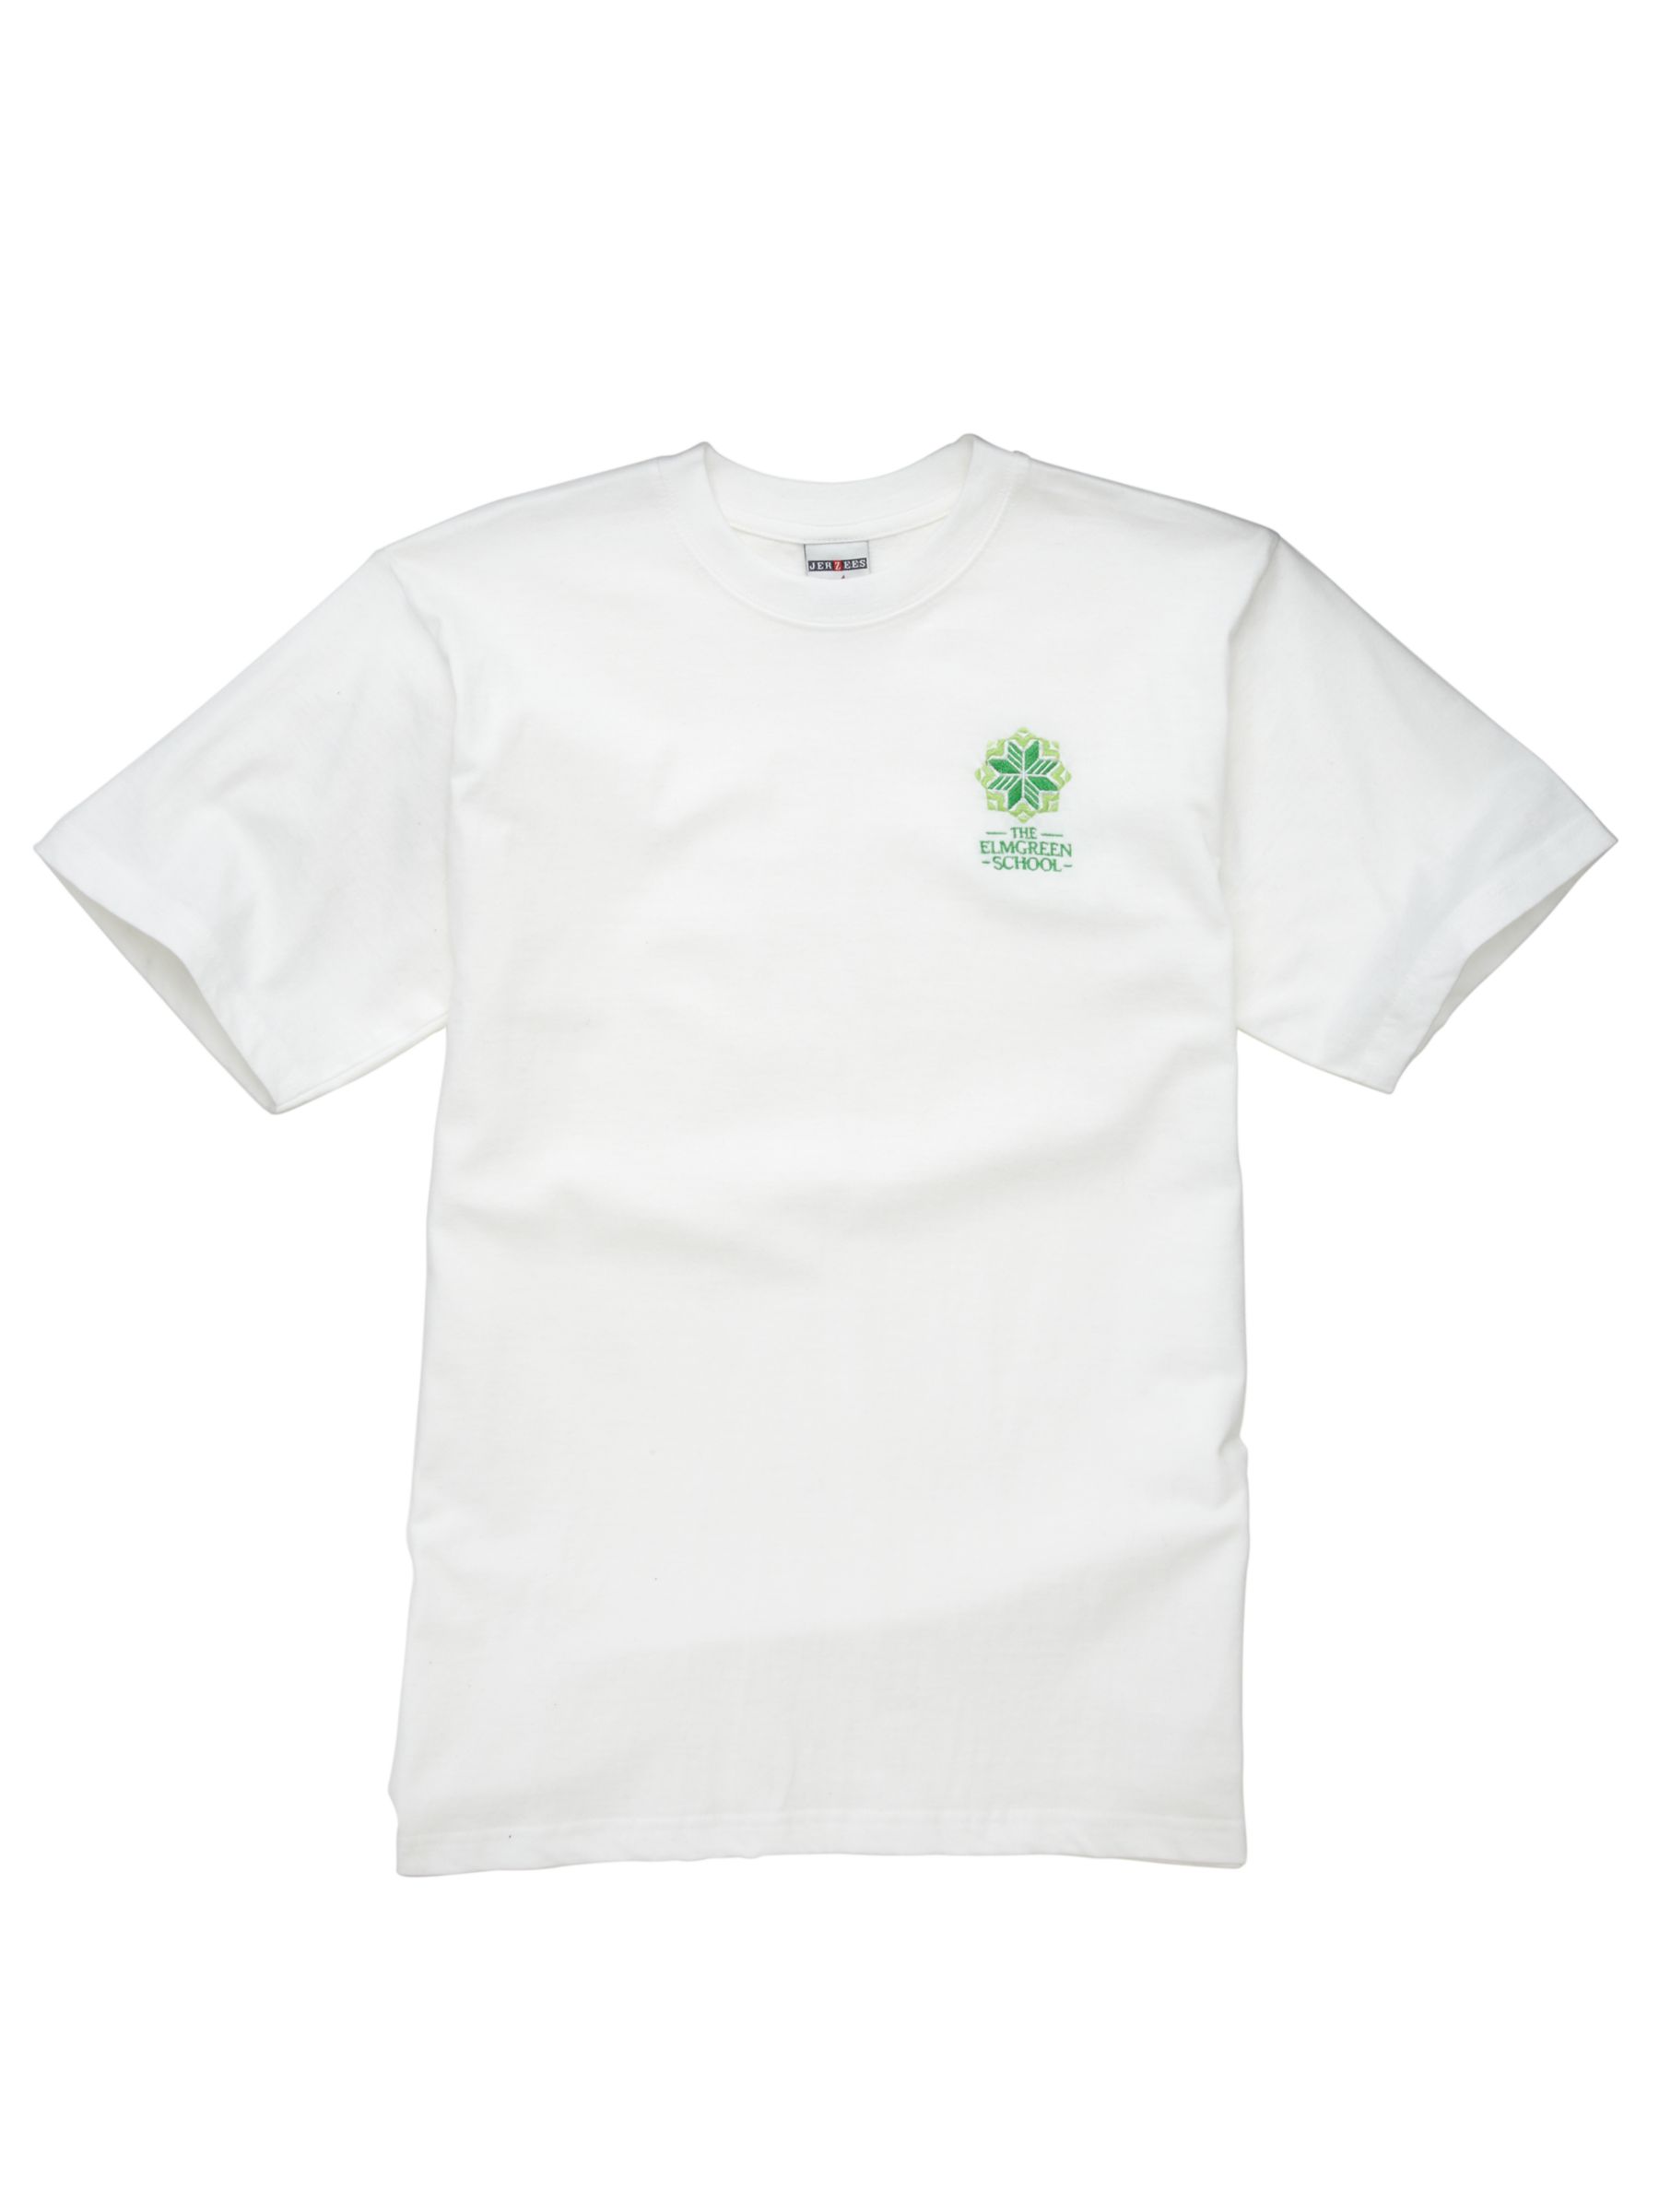 Unisex Sports T-Shirt, White